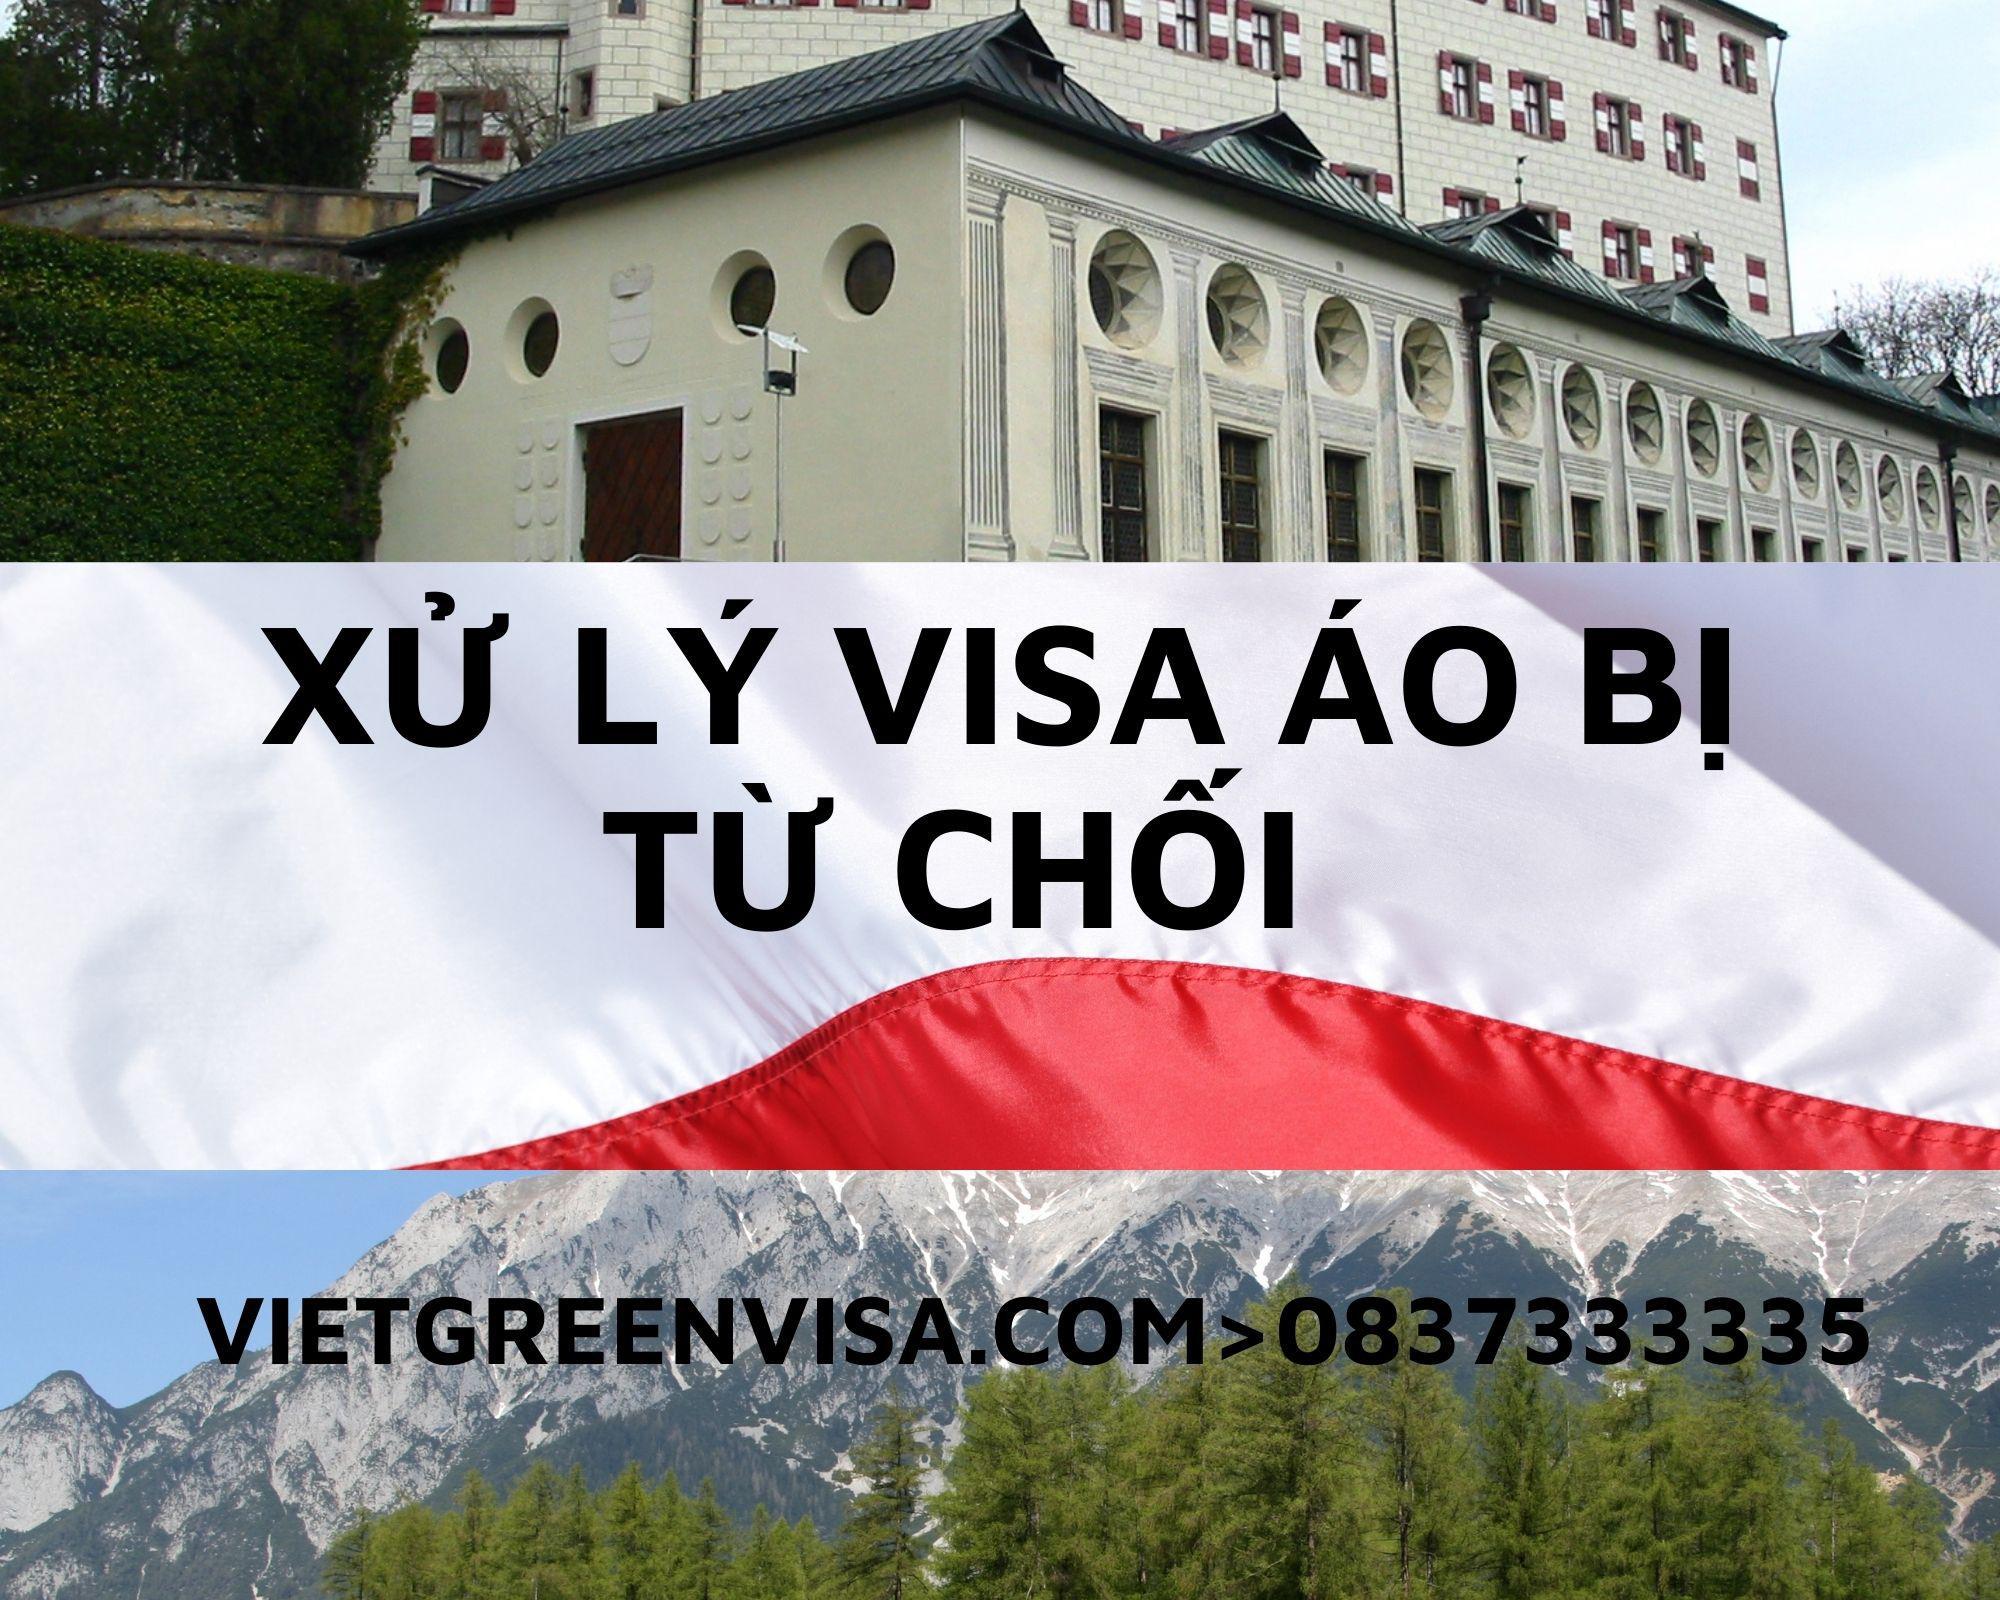 Xử lý visa Áo bị từ chối nhanh cóng, uy tín